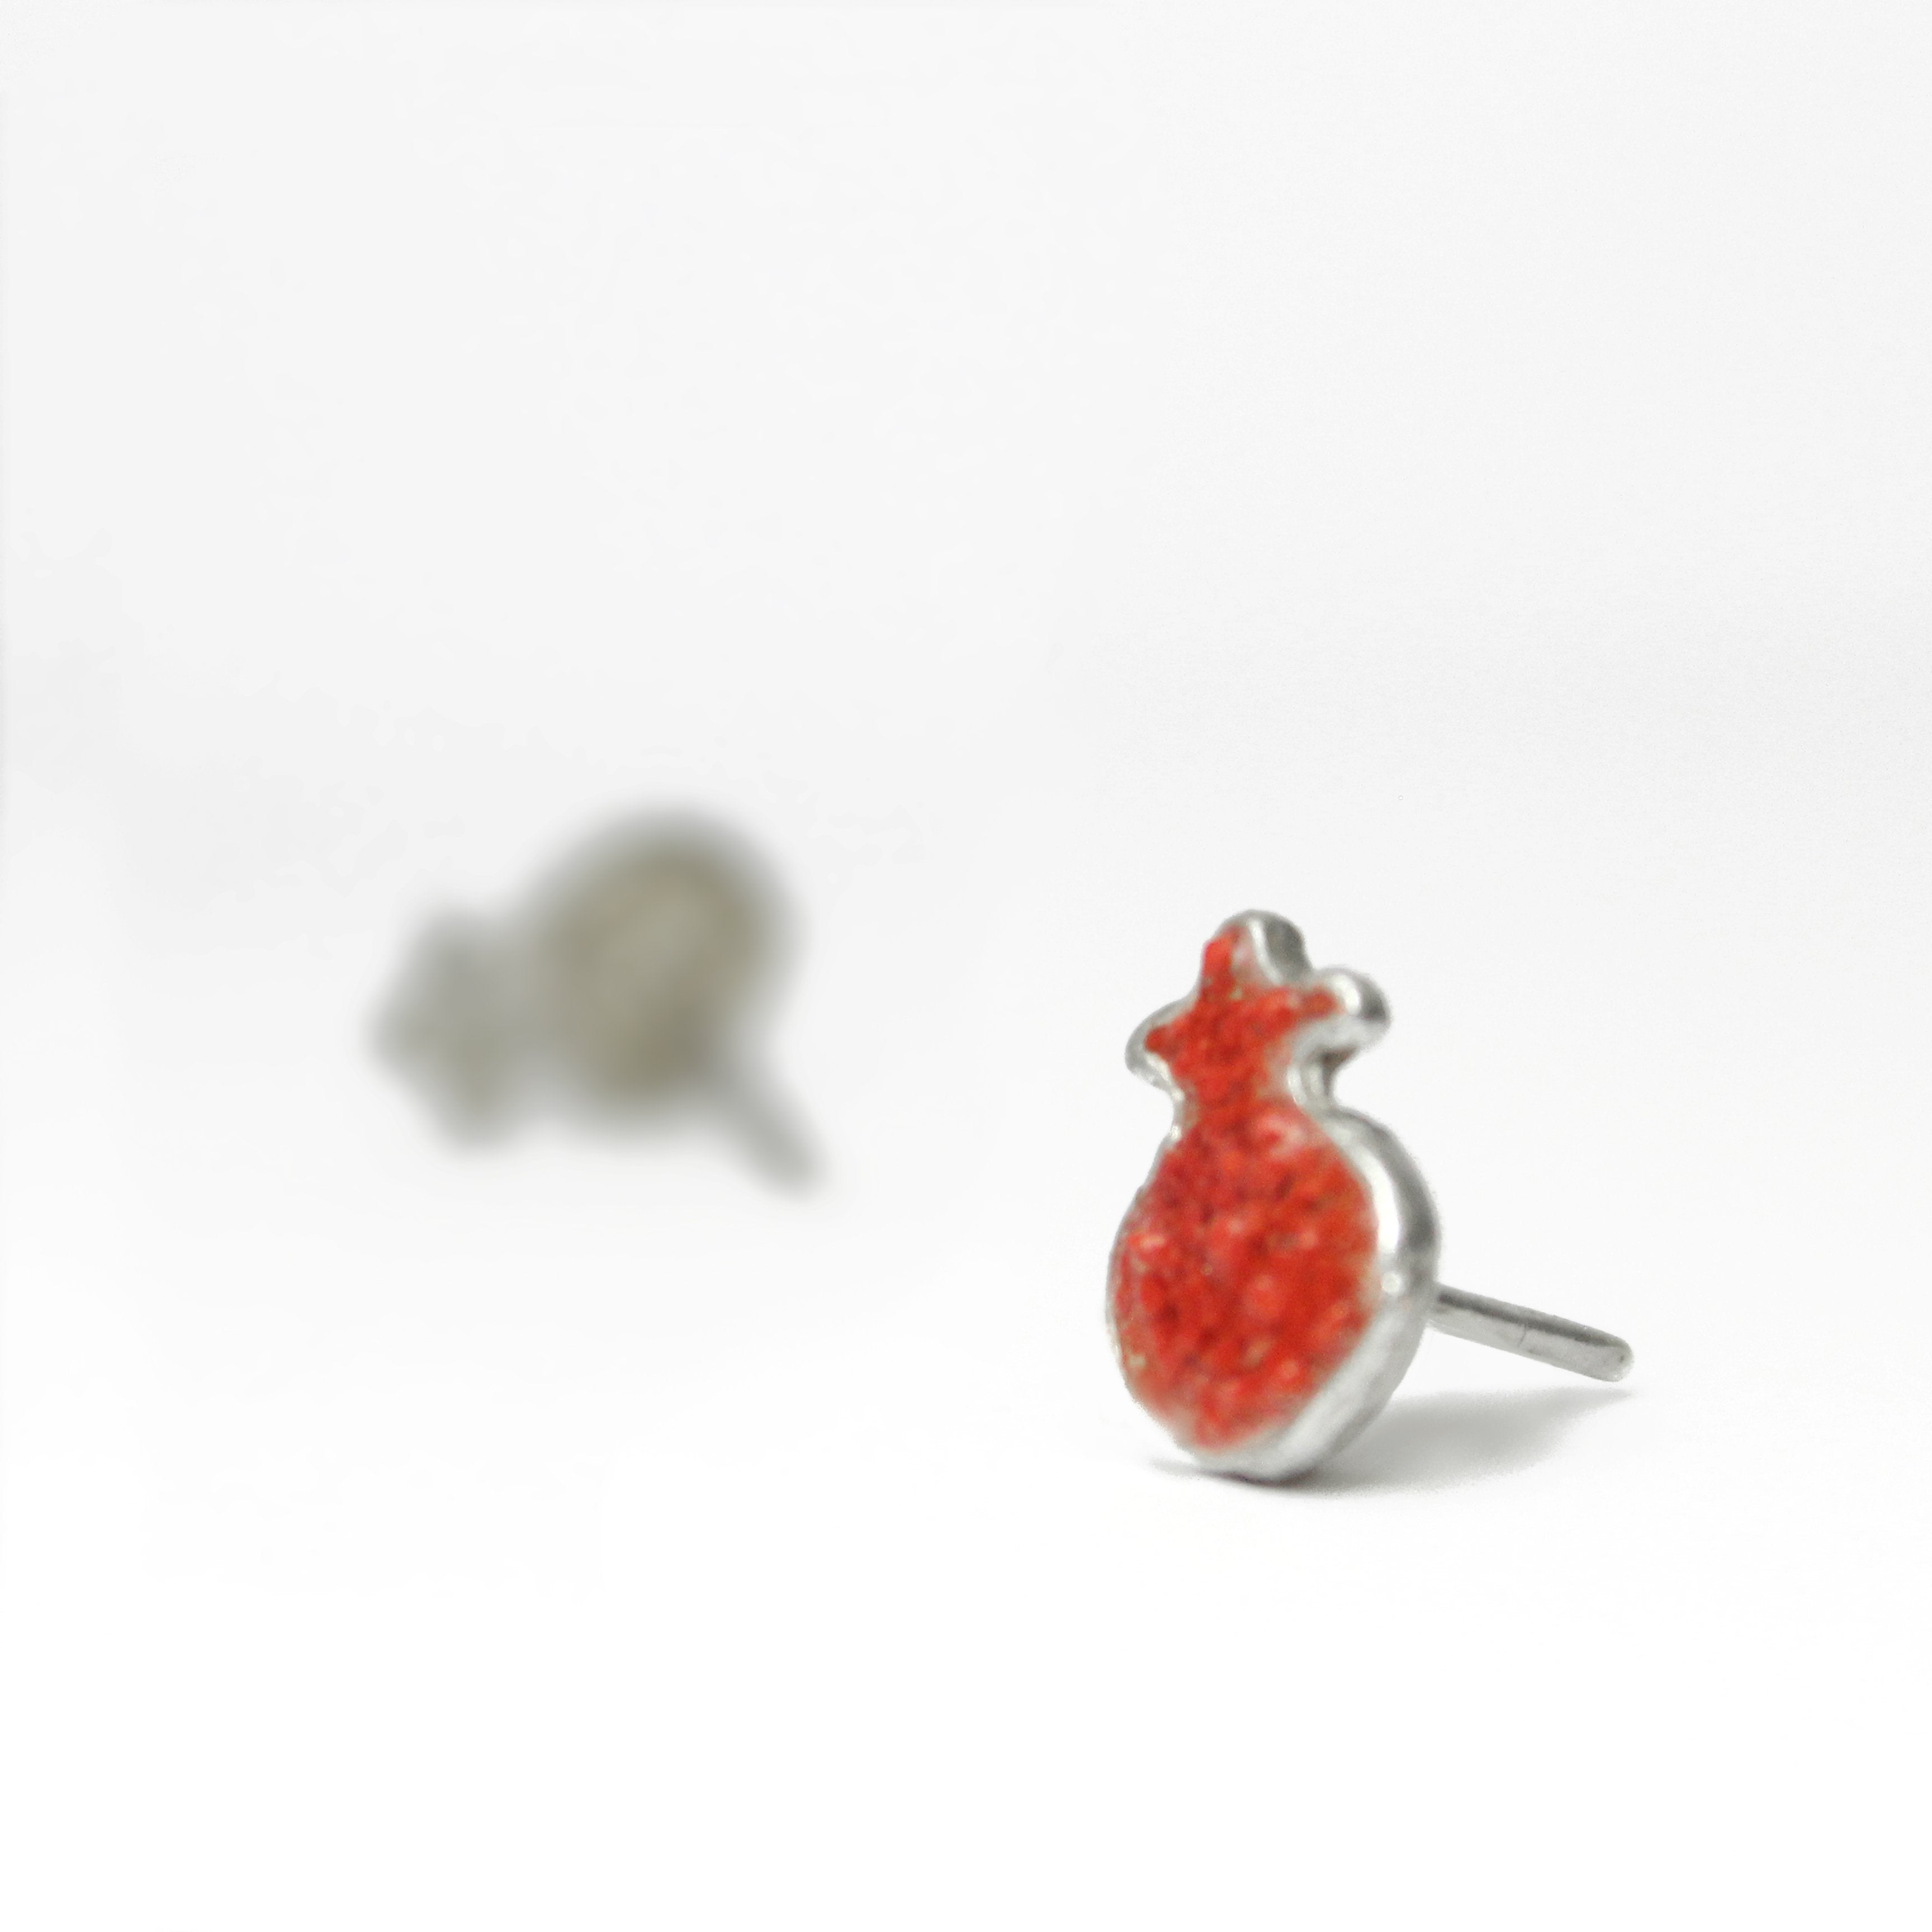 Red Pomegrant Silver & Stones Pierce Earrings - Shulamit Kanter